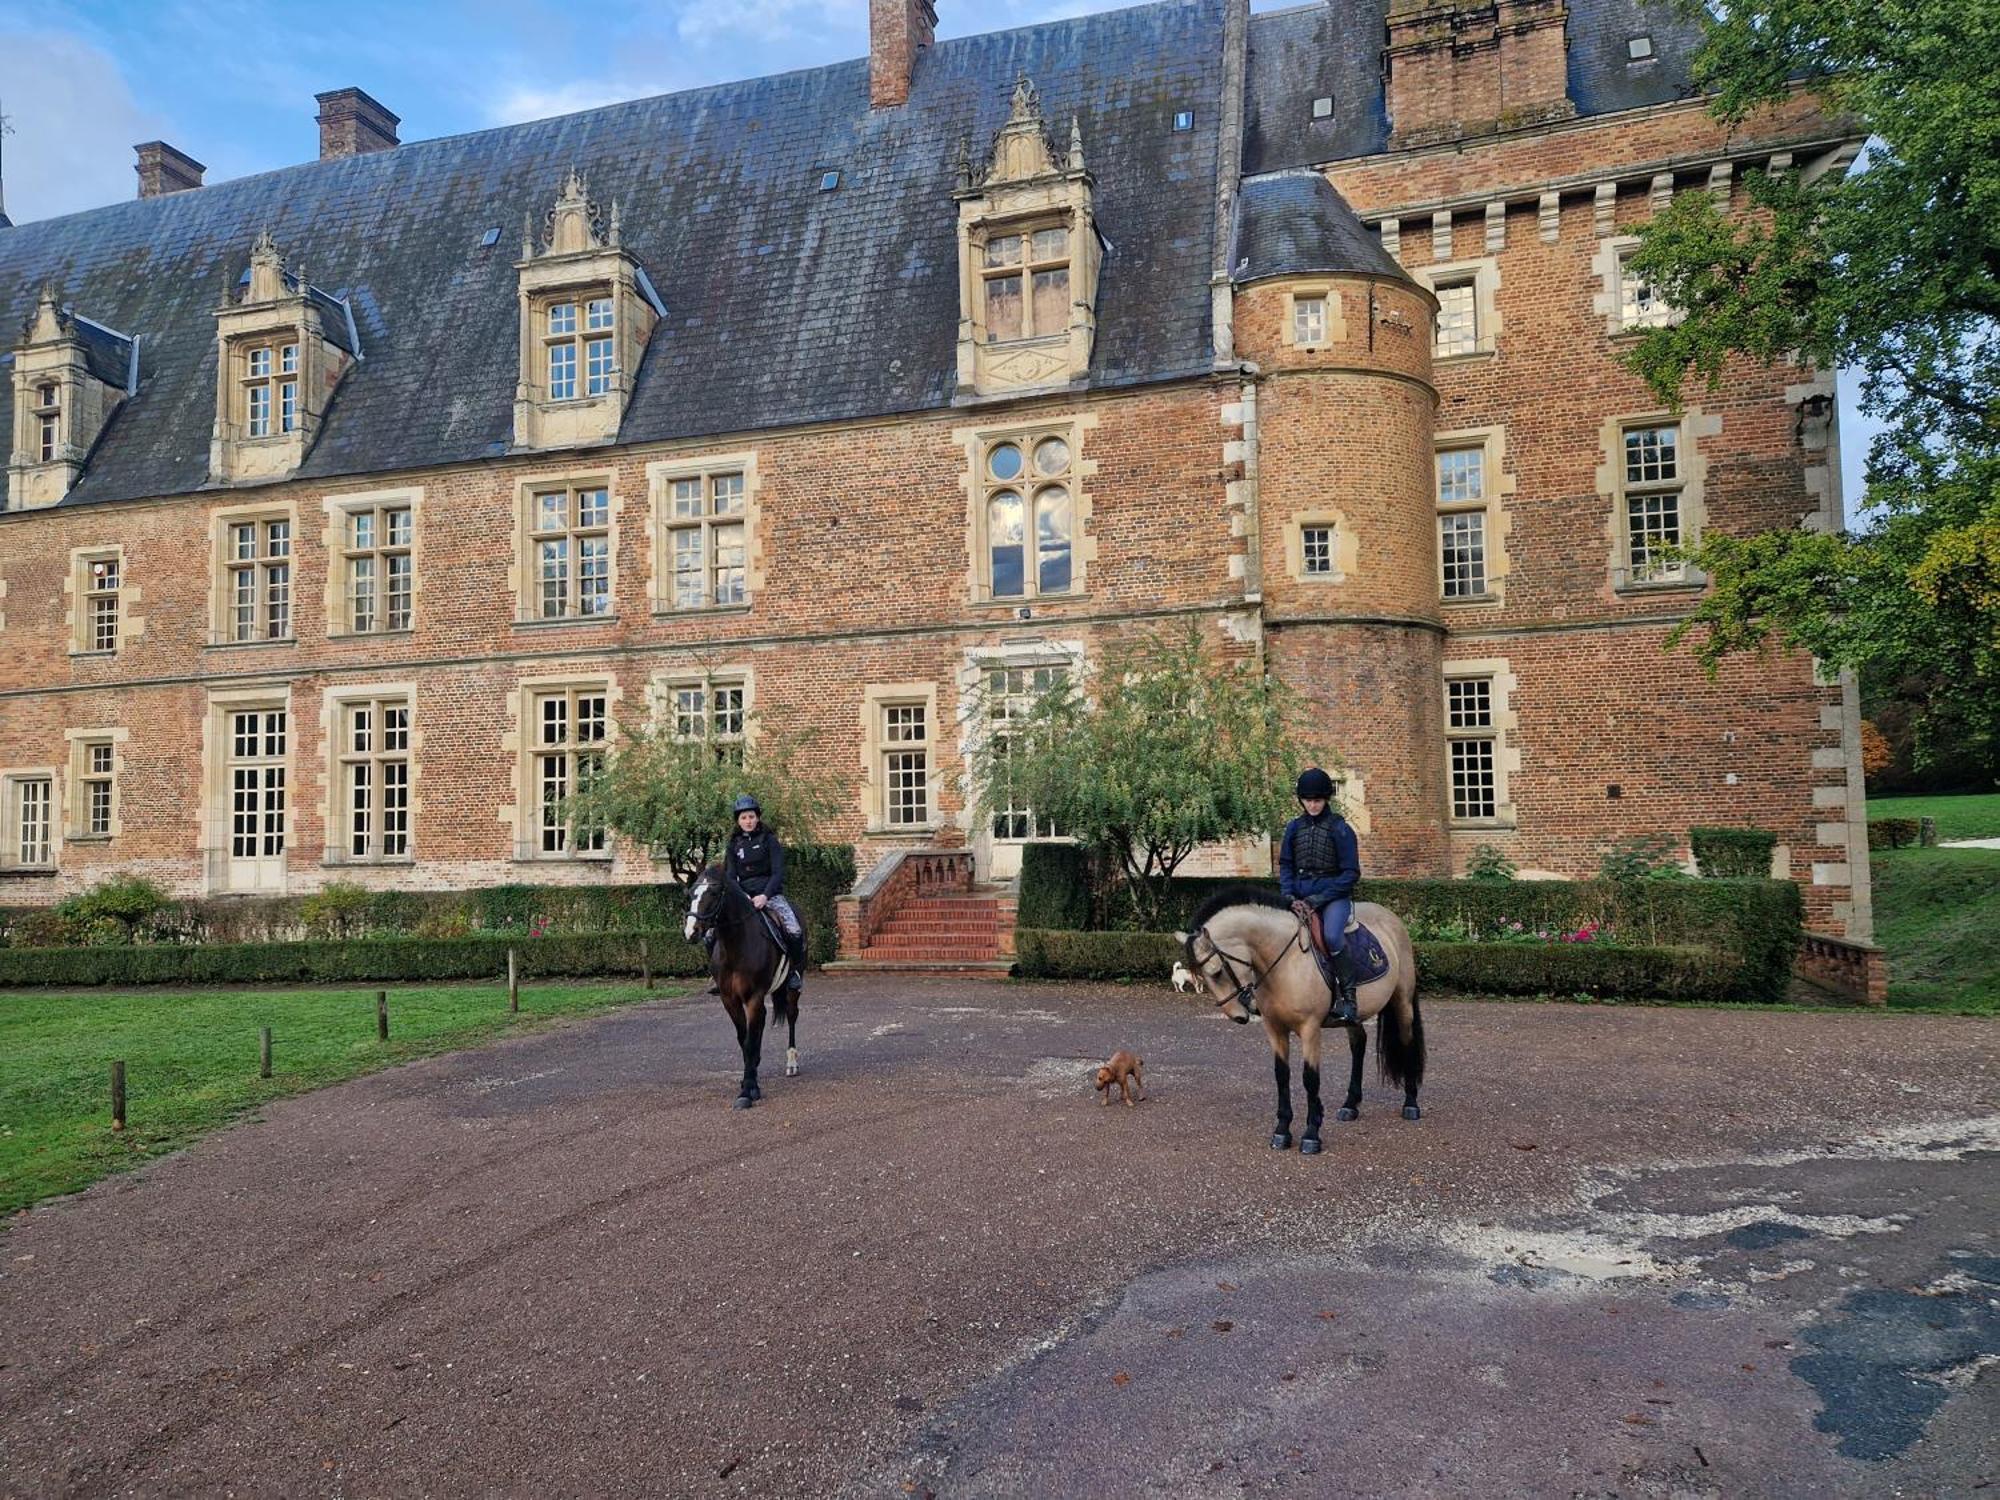 Ferme Equestre & Chambres D'Hotes Gateau Stables Proche Guedelon Saint-Amand-en-Puisaye Exterior foto